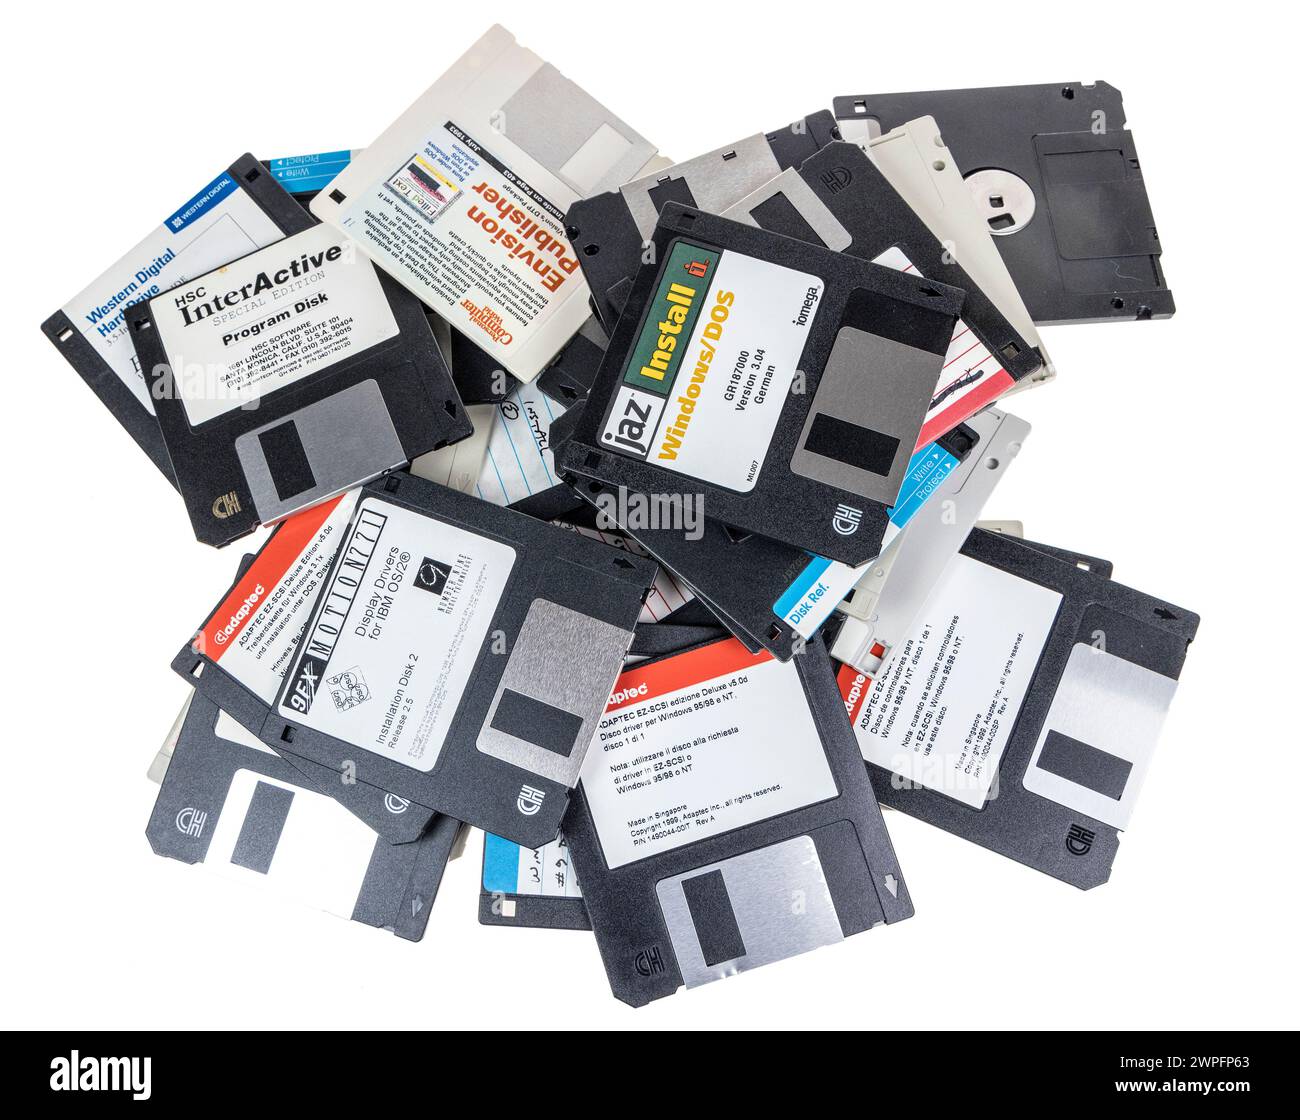 Alte Computer-Disketten wurden weggeworfen, da es sich um eine veraltete Technologie handelt Stockfoto